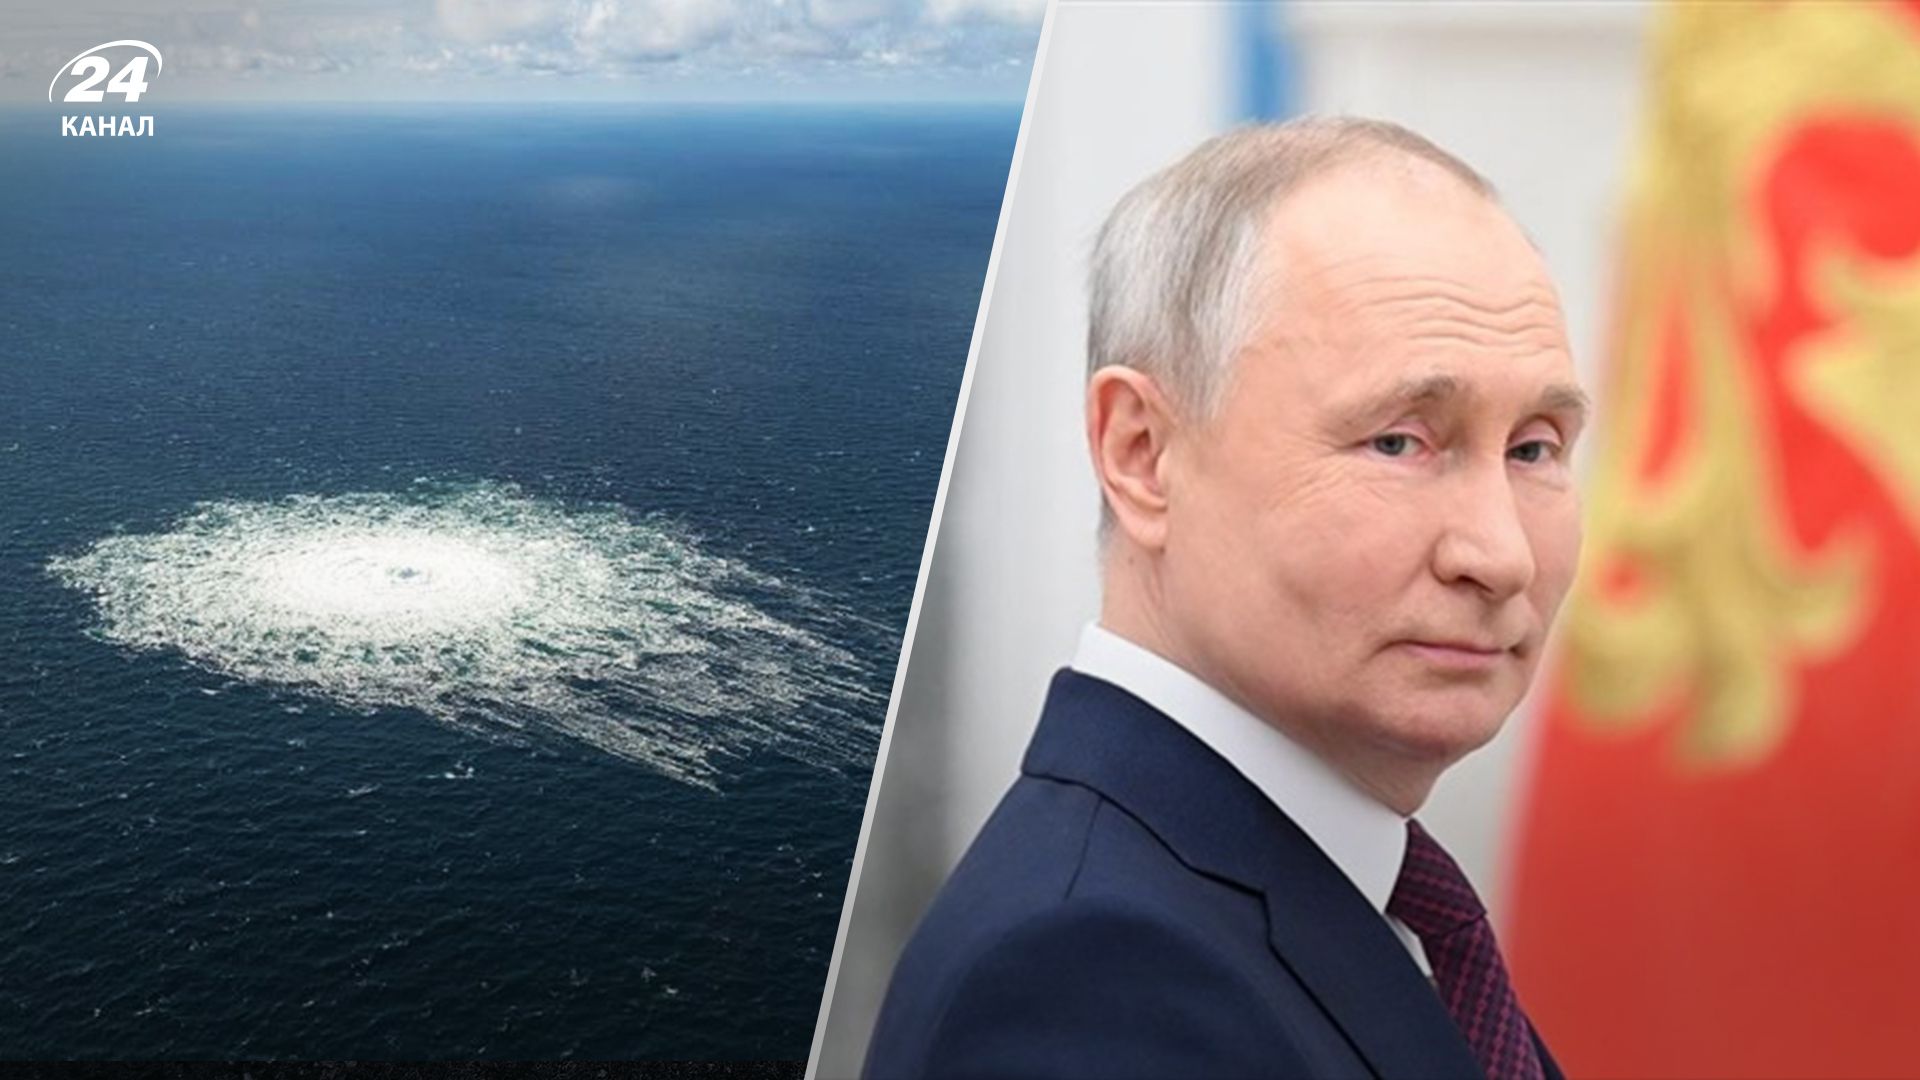 Российские военные корабли были в районе "Северных потоков" за несколько дней до взрывов, - СМИ - 24 Канал